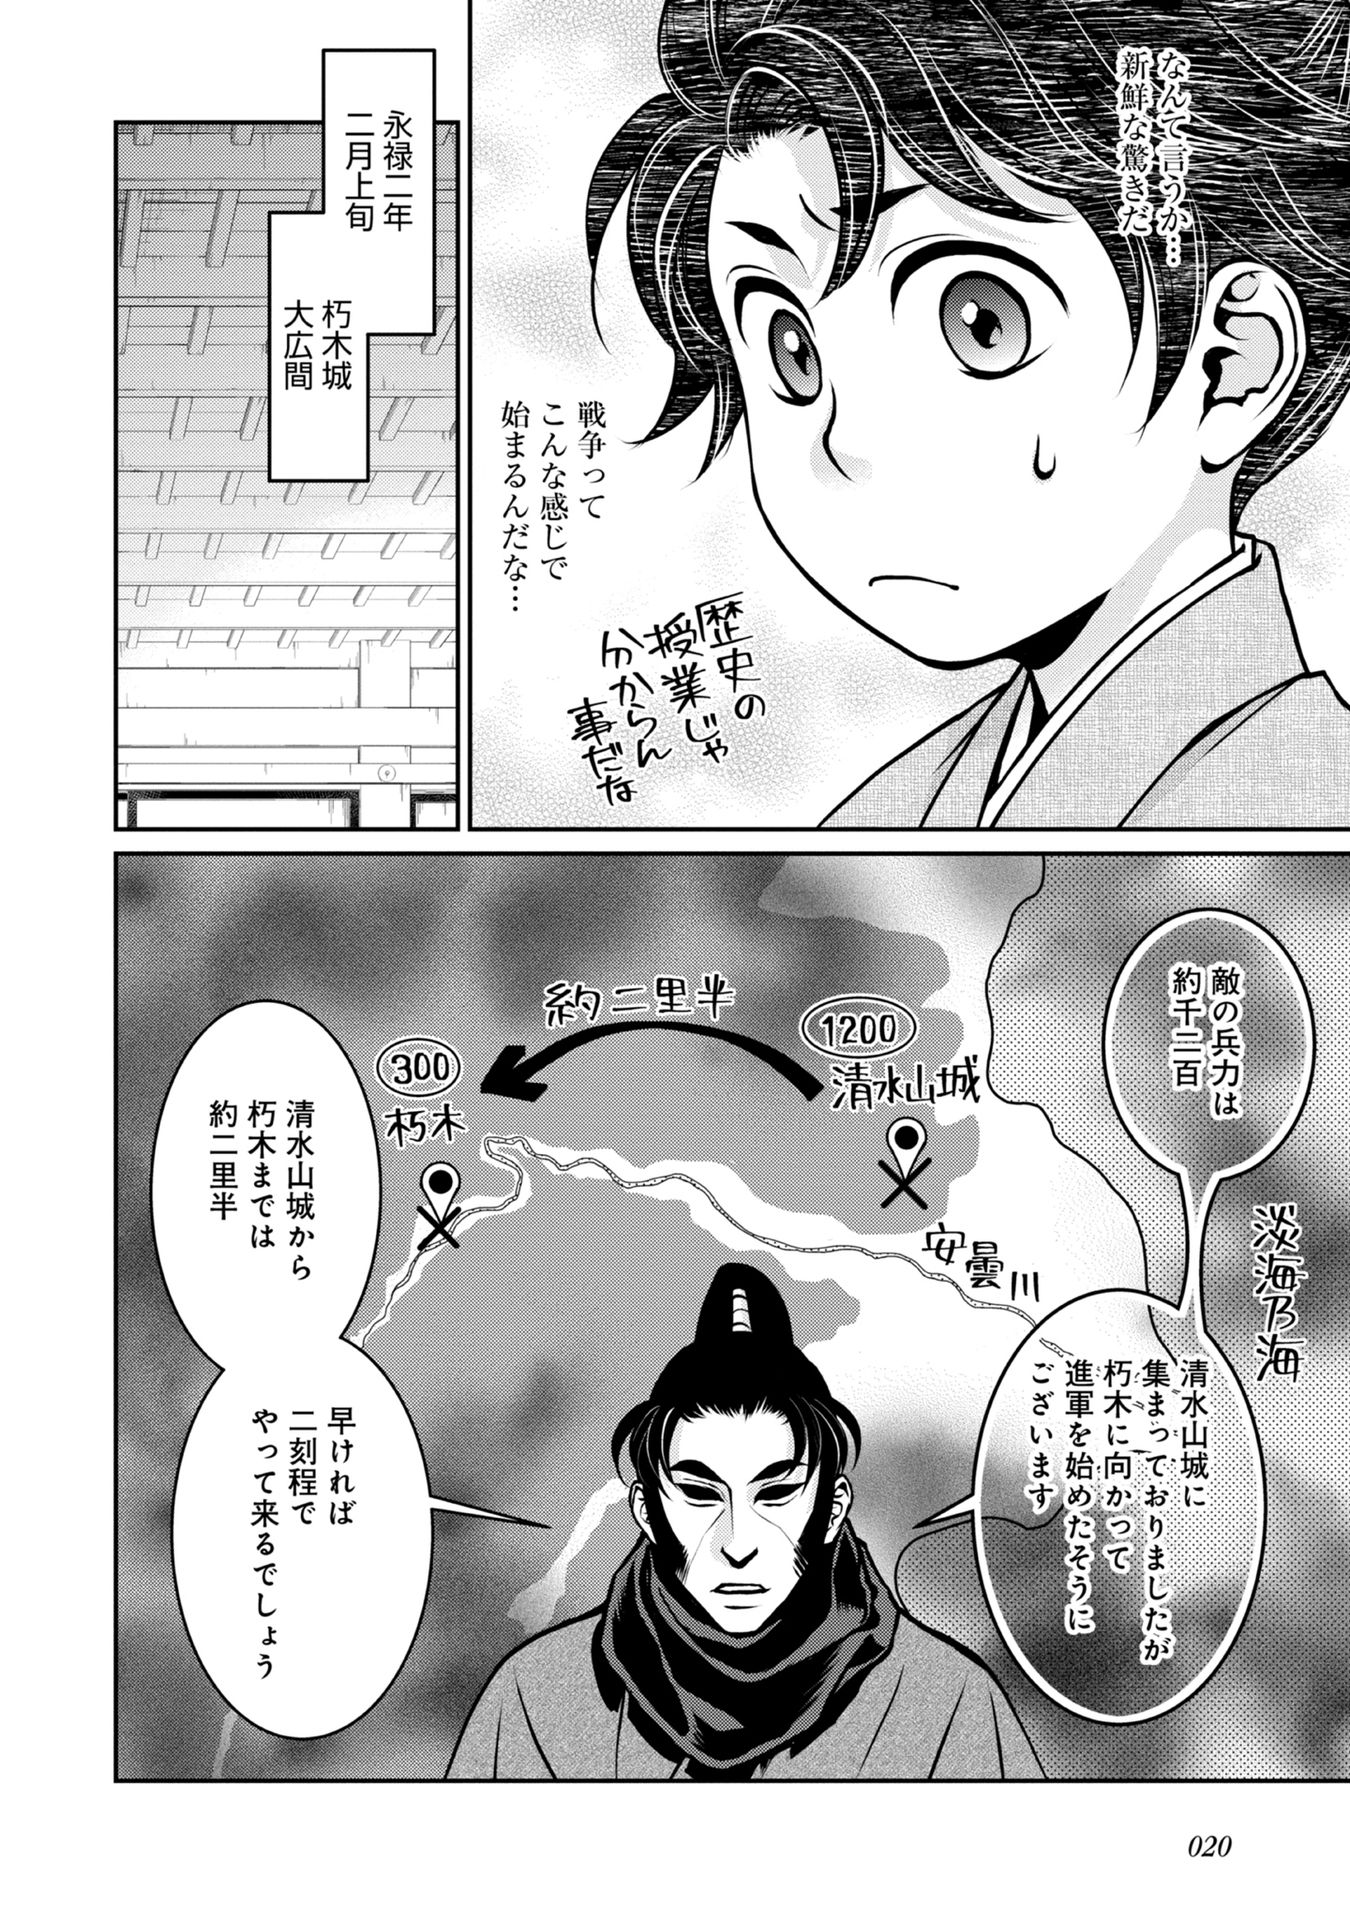 Afumi no Umi – Minamo ga Yureru Toki - Chapter 5 - Page 18